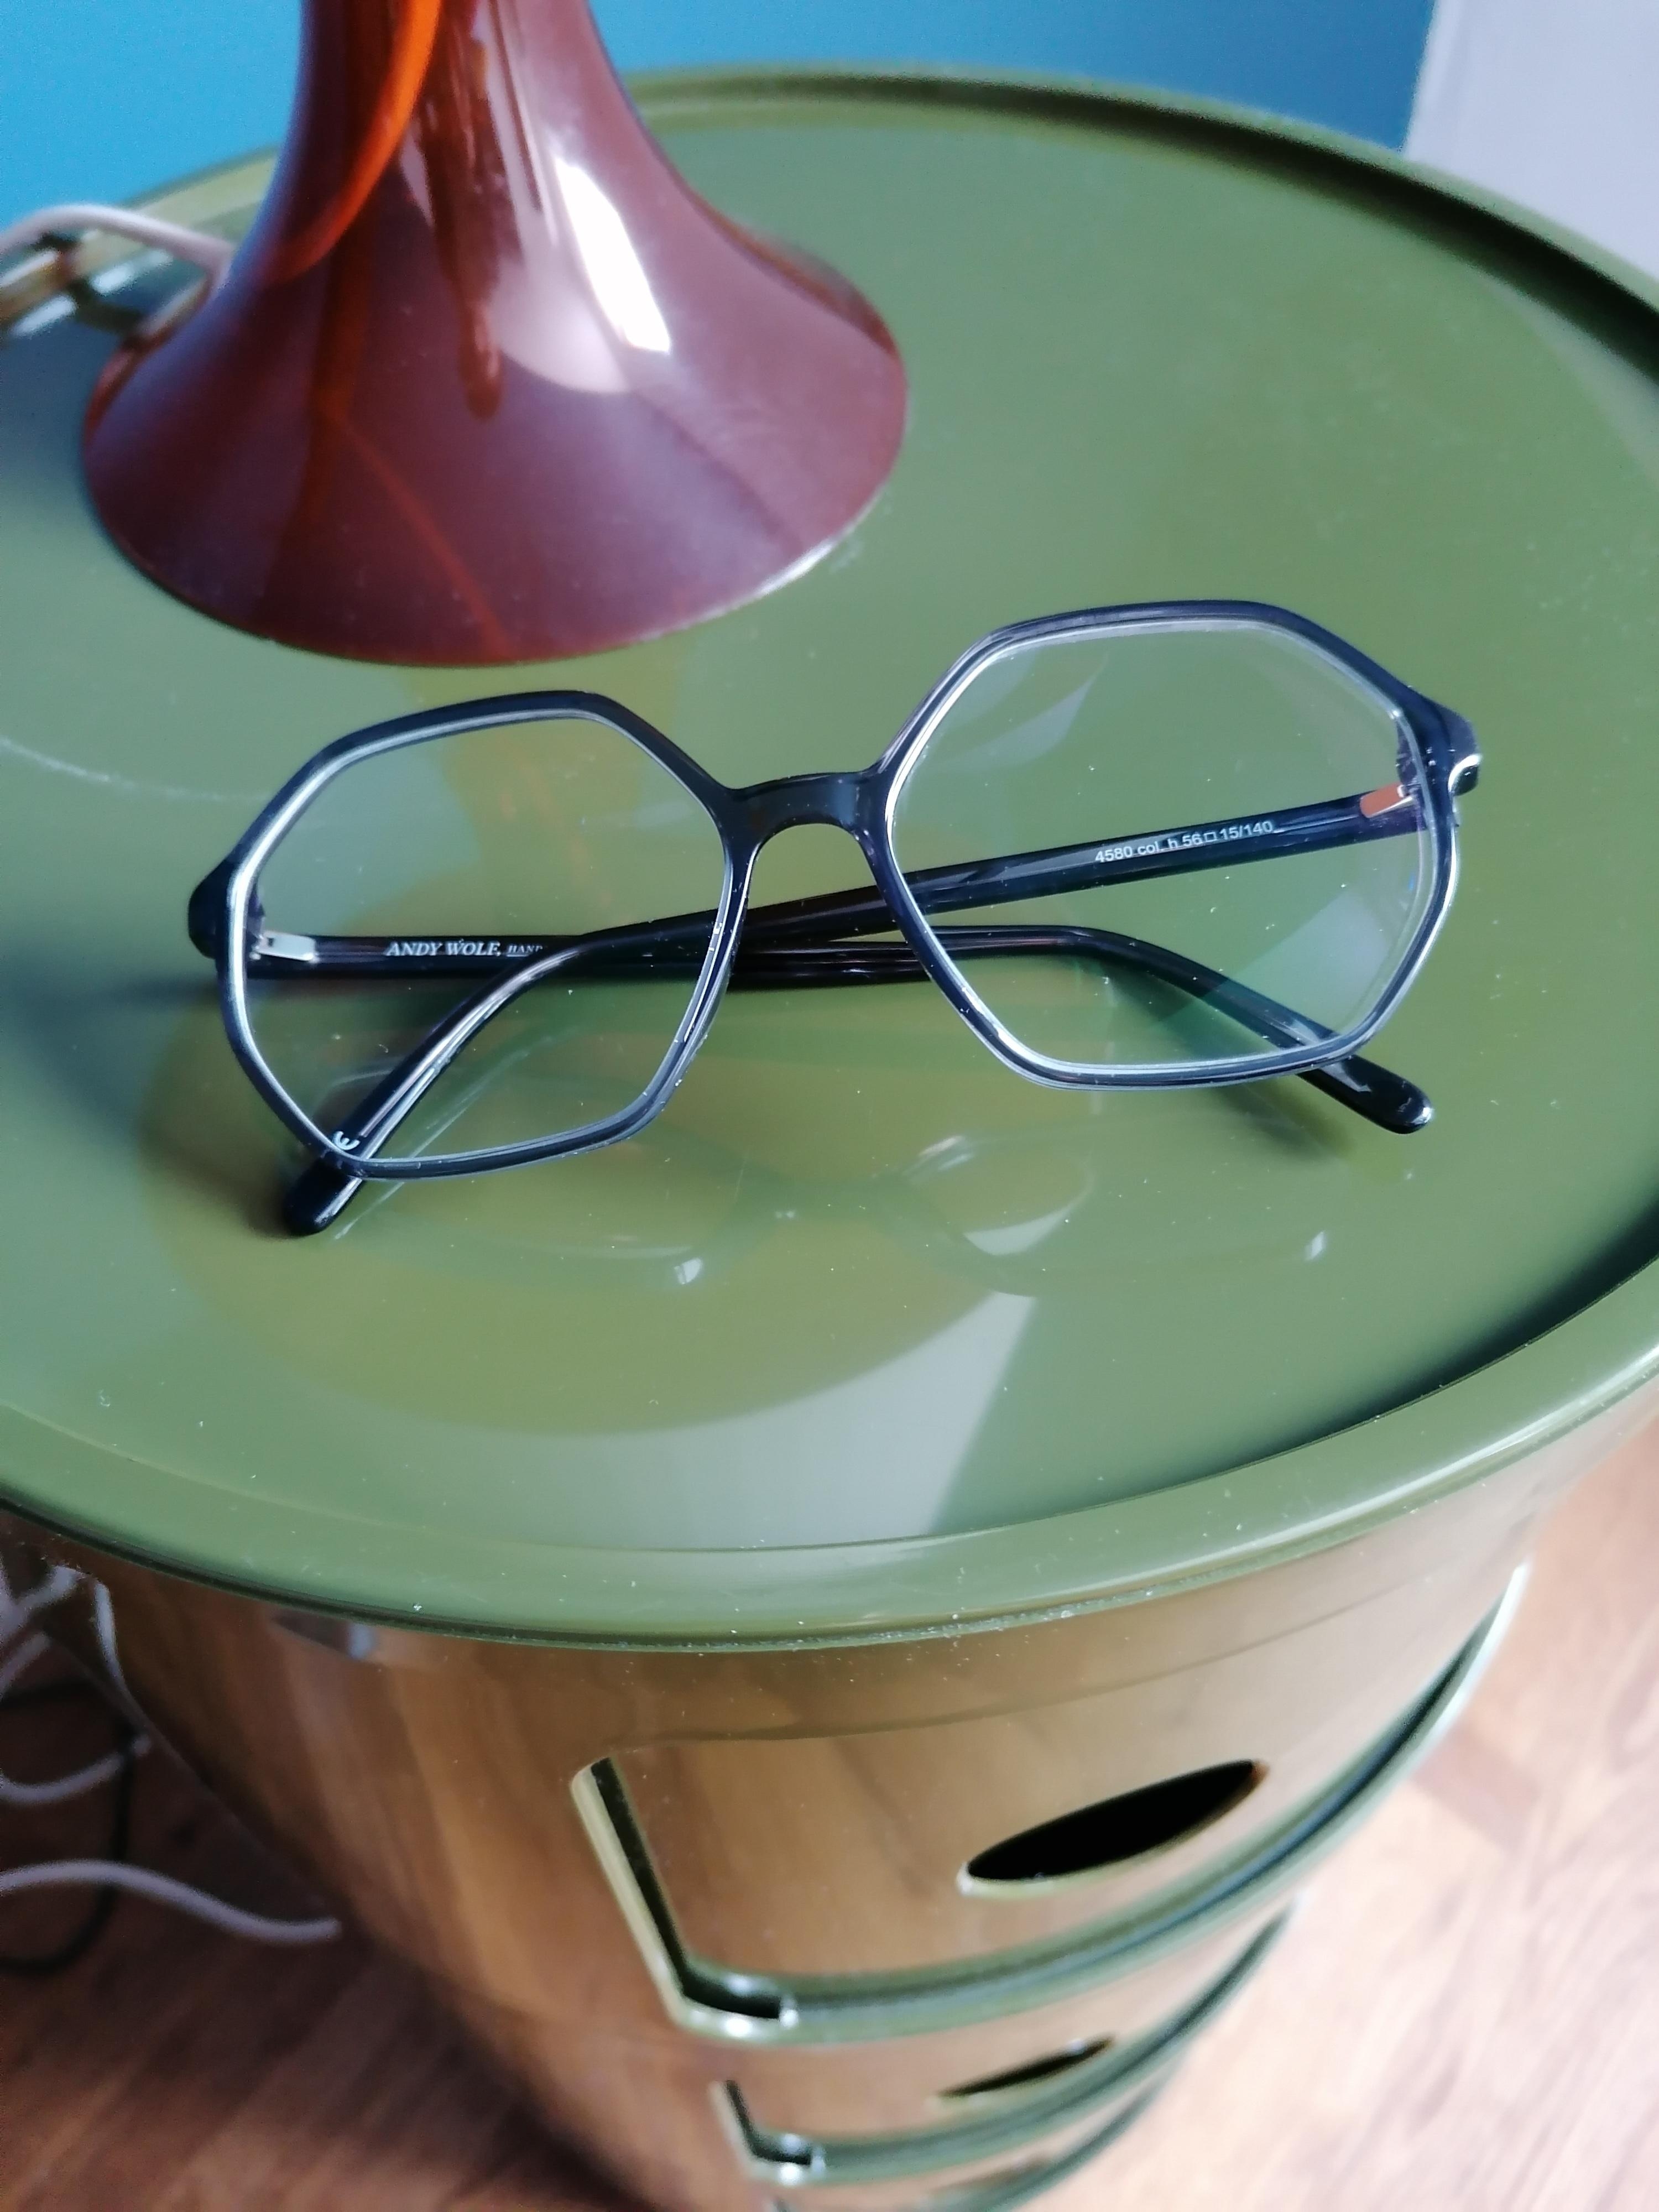 endlich mal wieder eine neue #Brille von #AndyWolf
Ich finde sie steht meinem Nachttisch.. ;-)